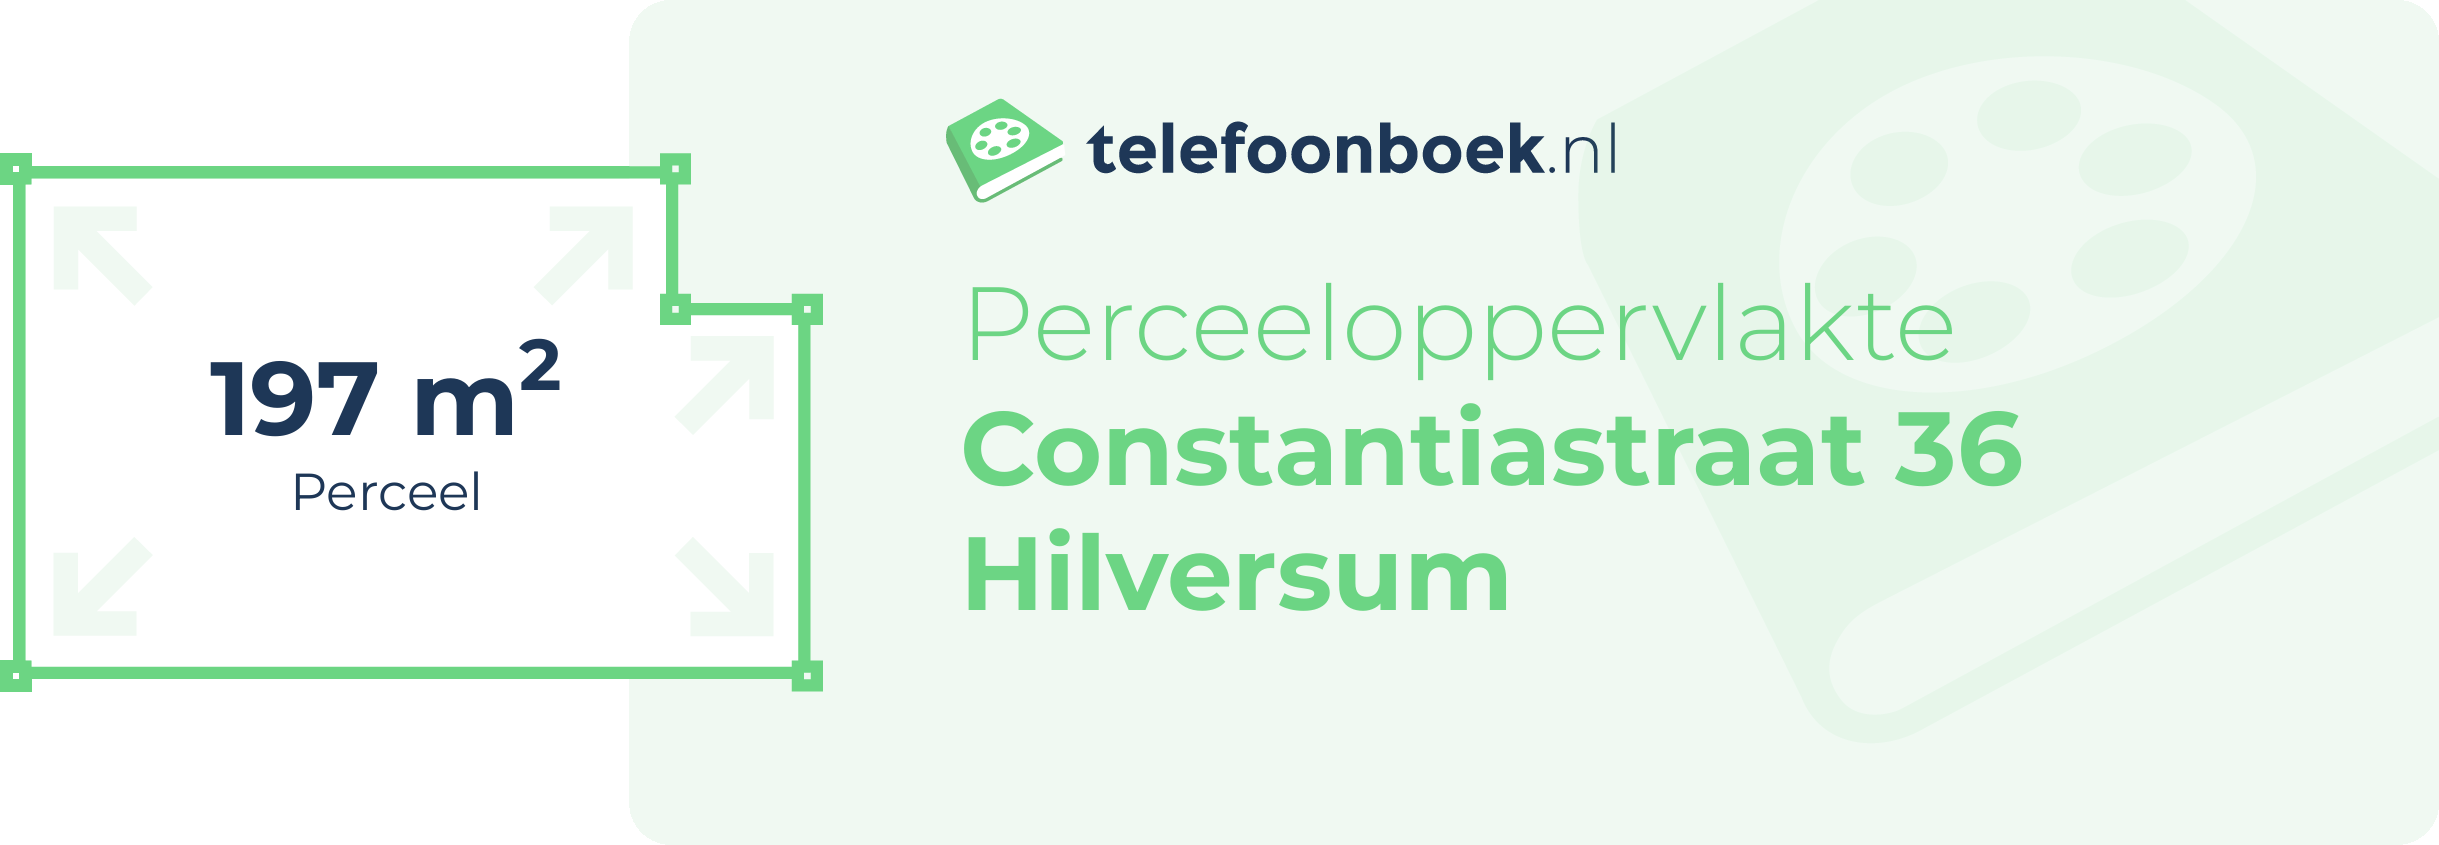 Perceeloppervlakte Constantiastraat 36 Hilversum